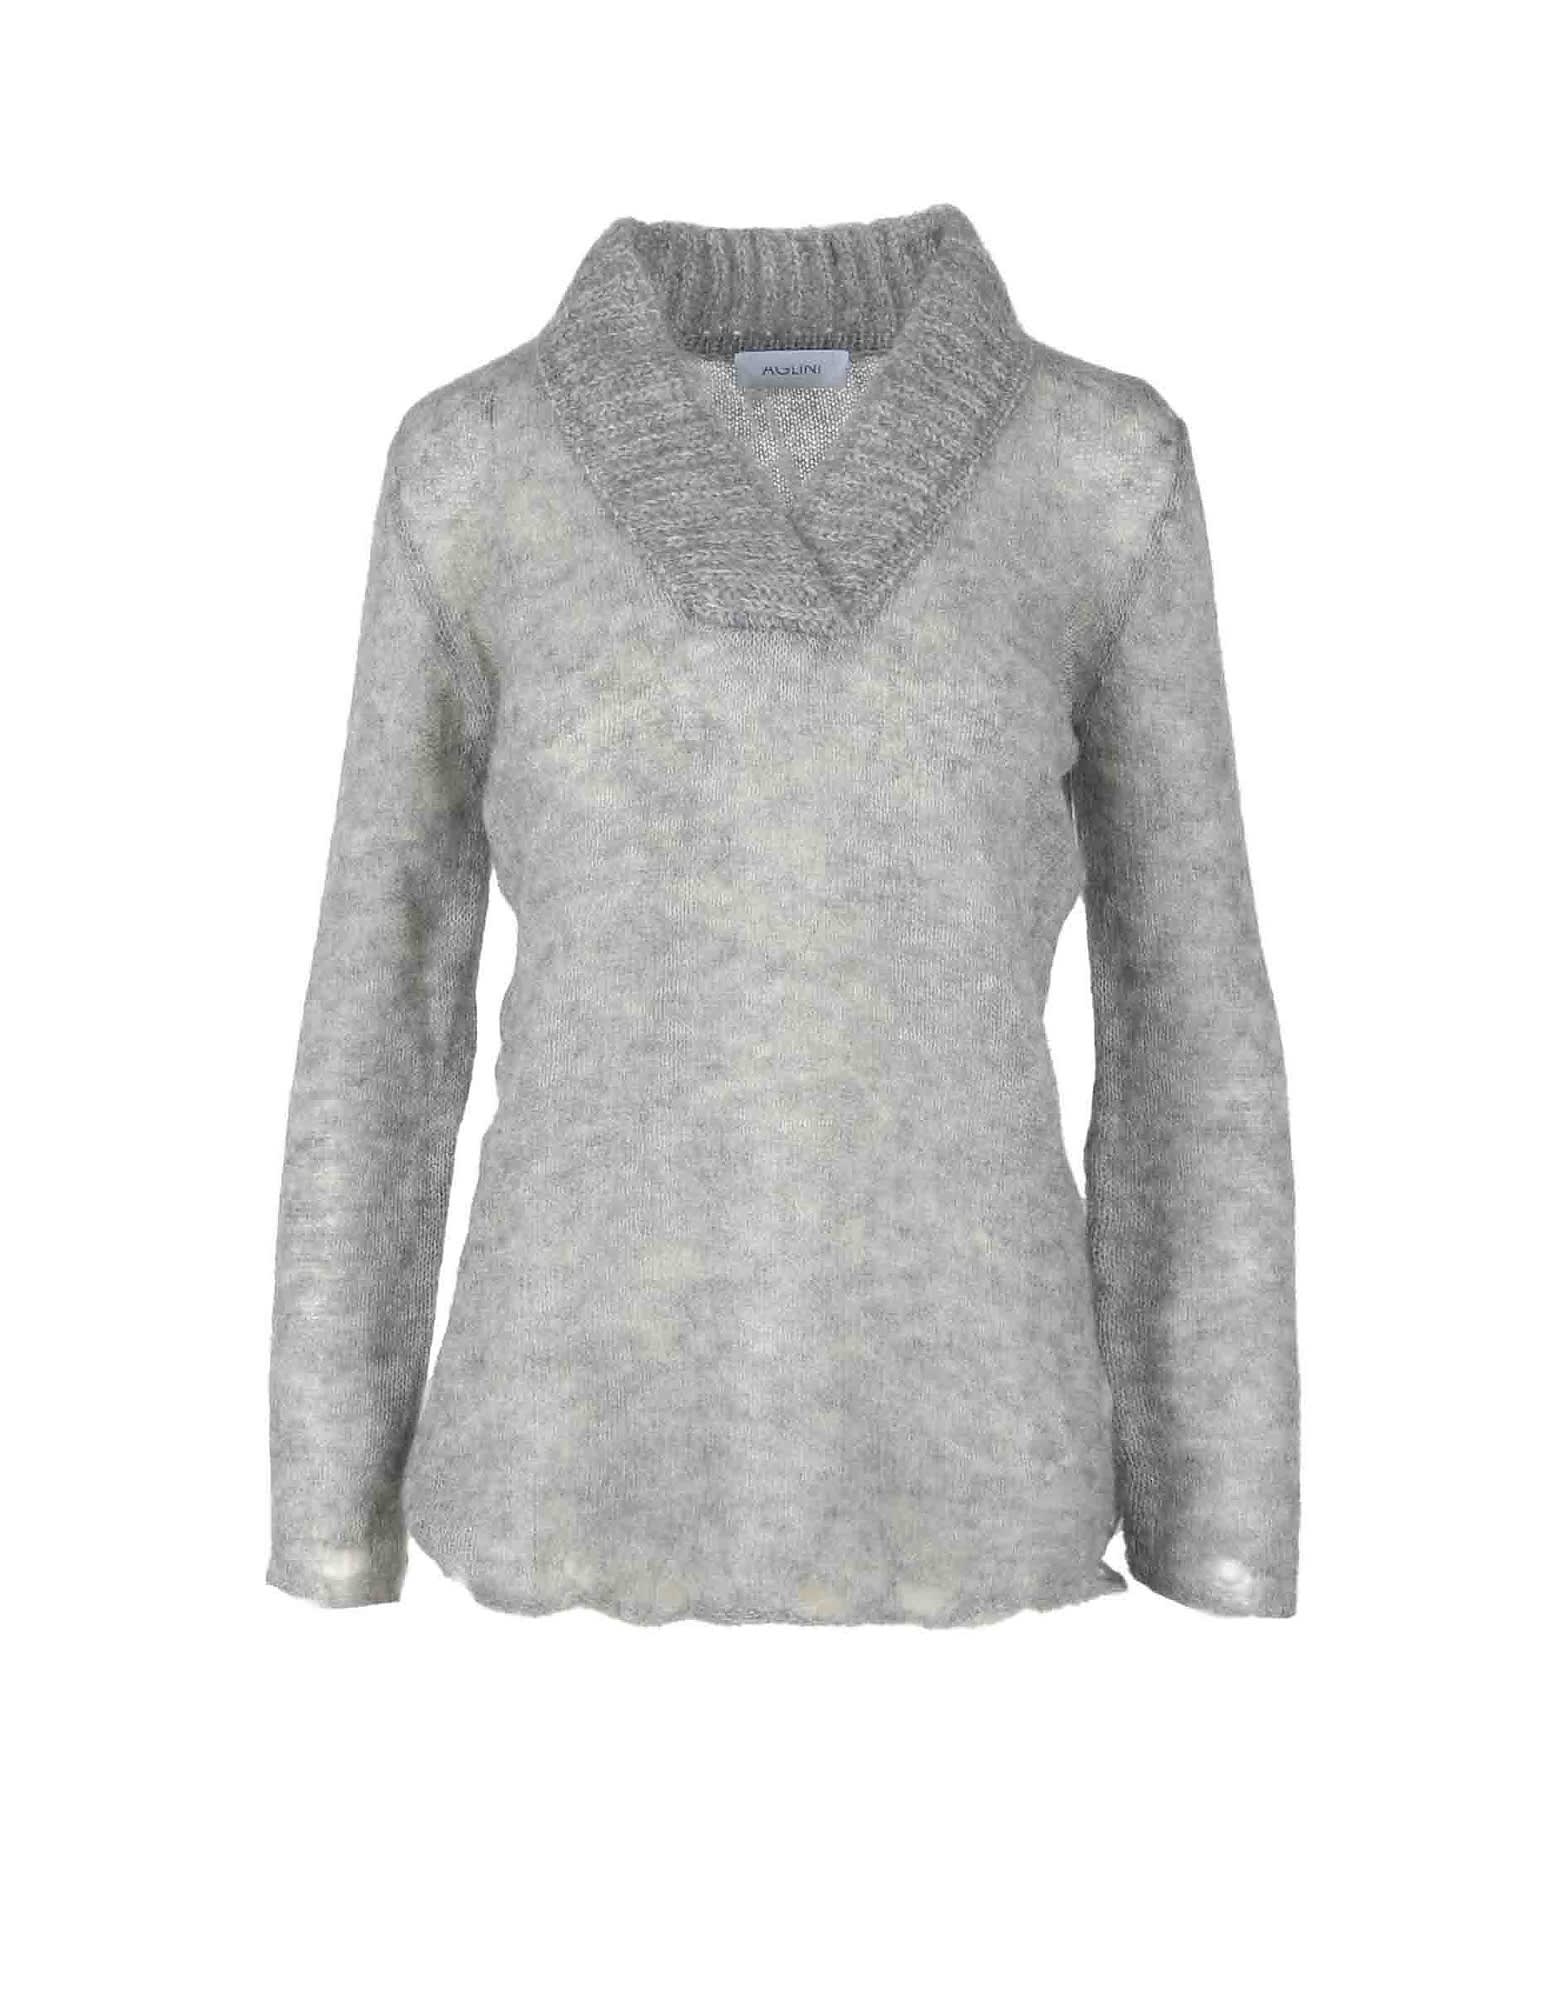 Aglini Womens Gray Sweater